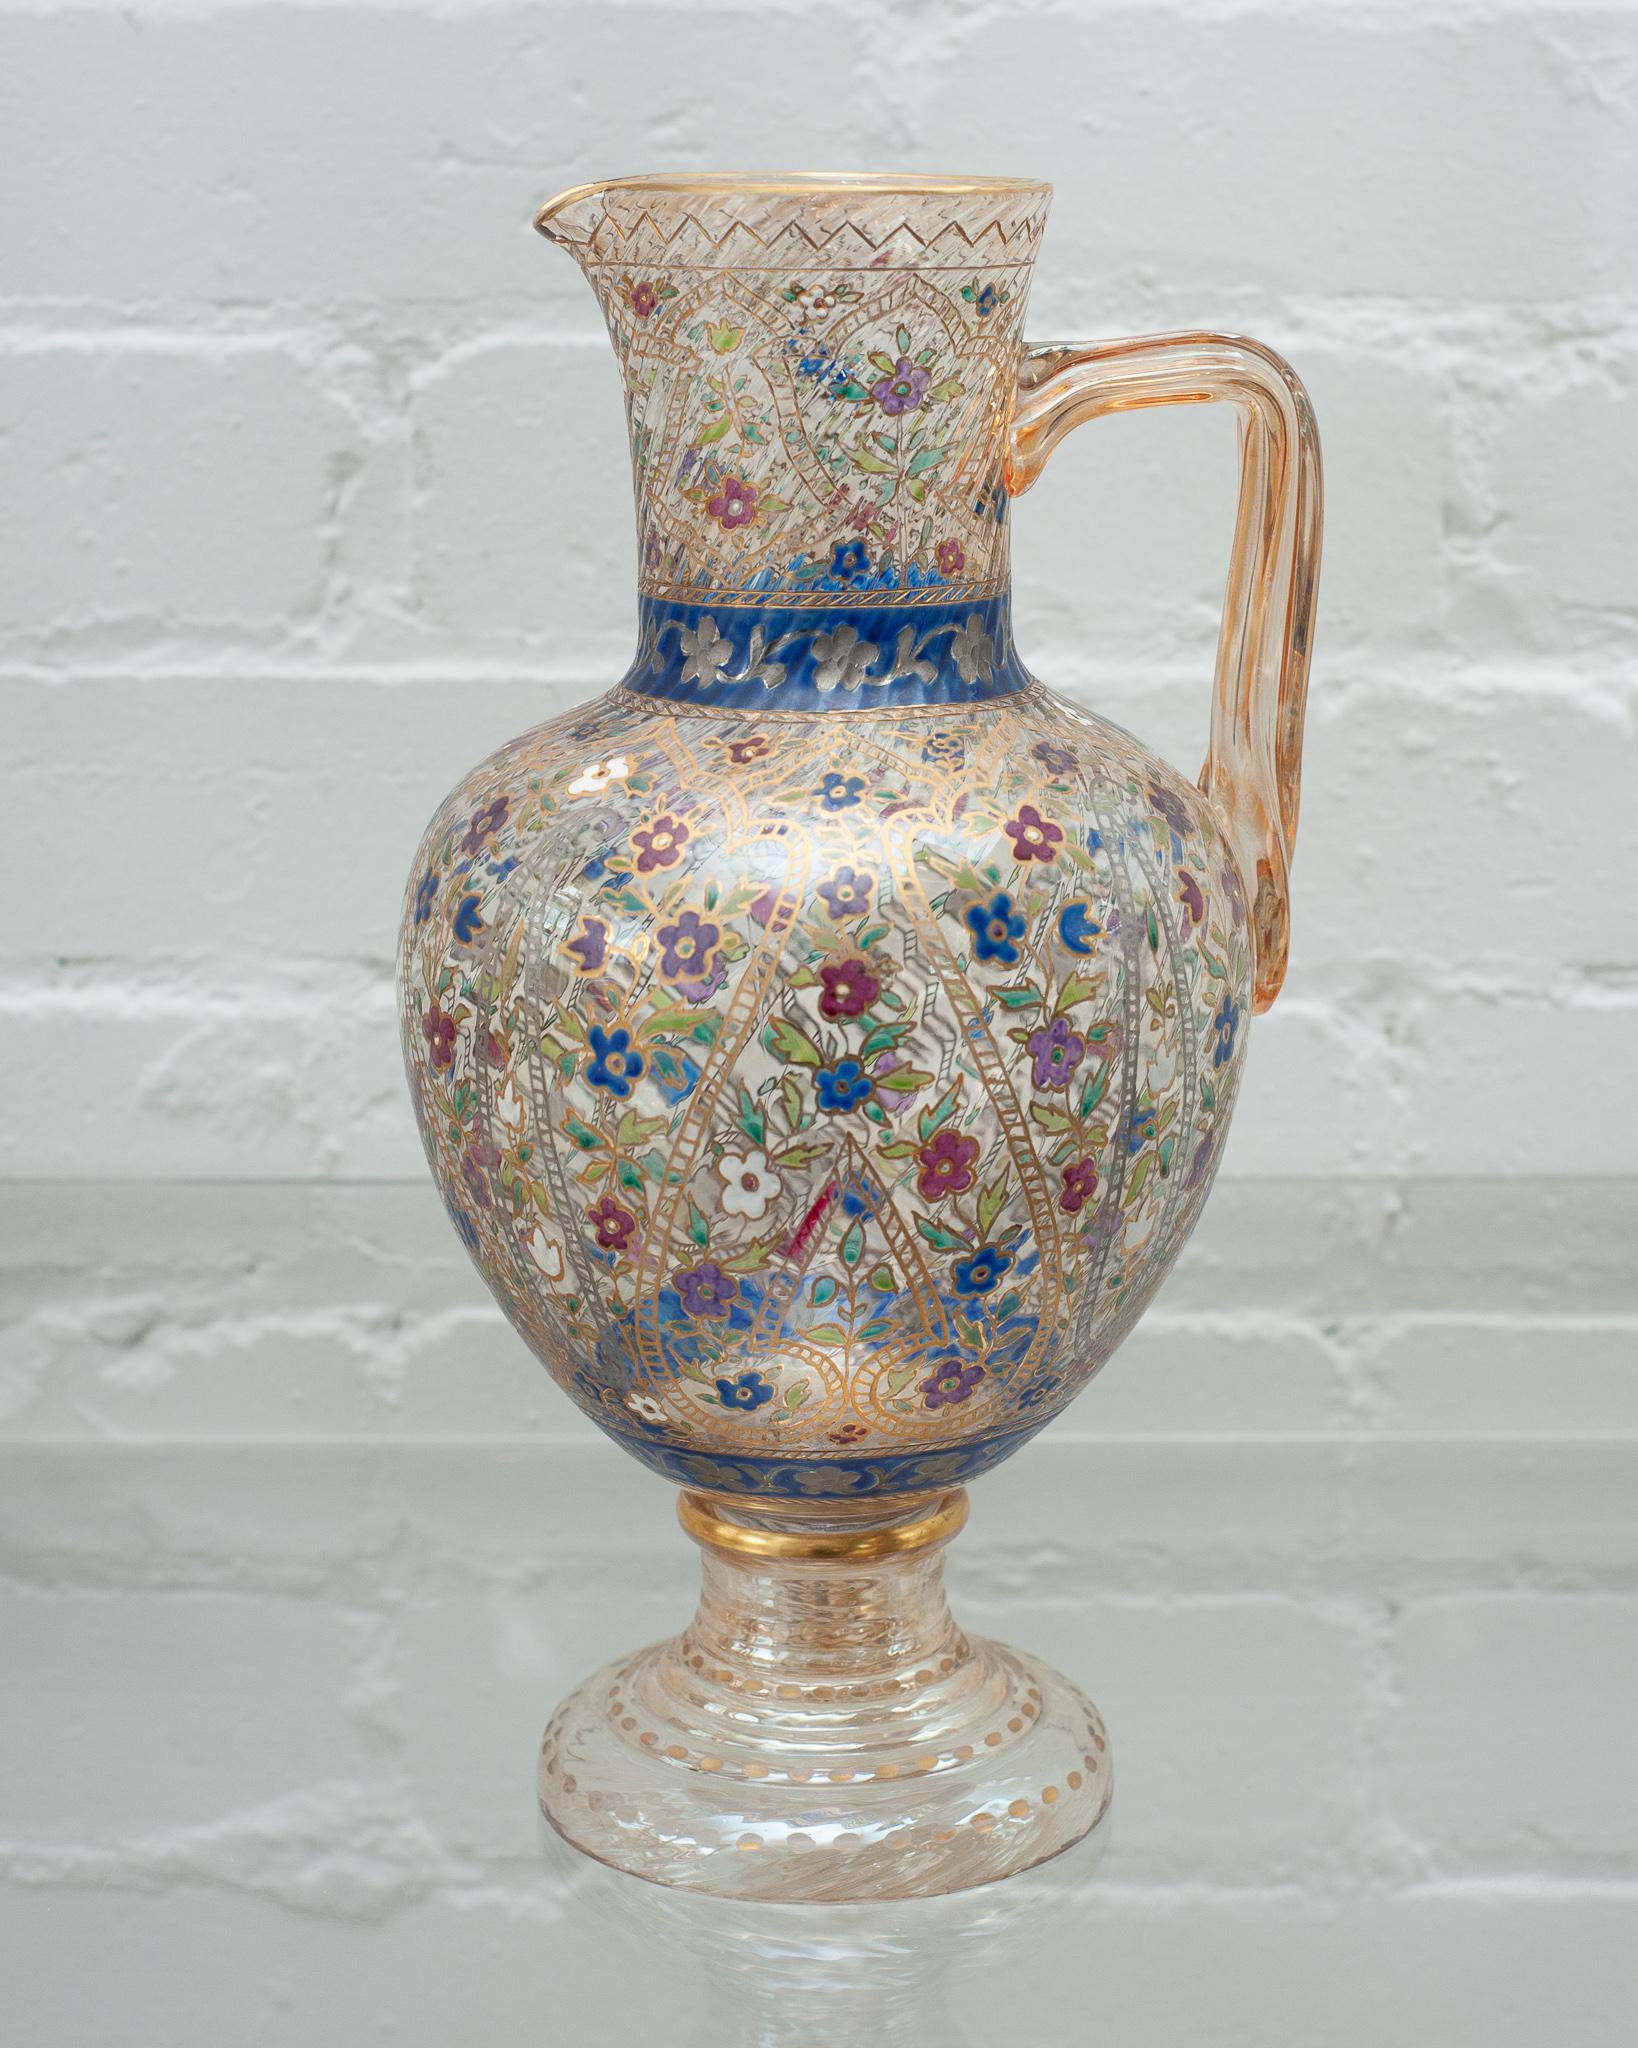 Magnifique pichet à eau antique en cristal de Bohème avec un travail d'émail orné, vers 1920. Décoré de motifs floraux et de dorures à l'or, ce récipient égaiera n'importe quelle table grâce à son savoir-faire et à ses couleurs vives.